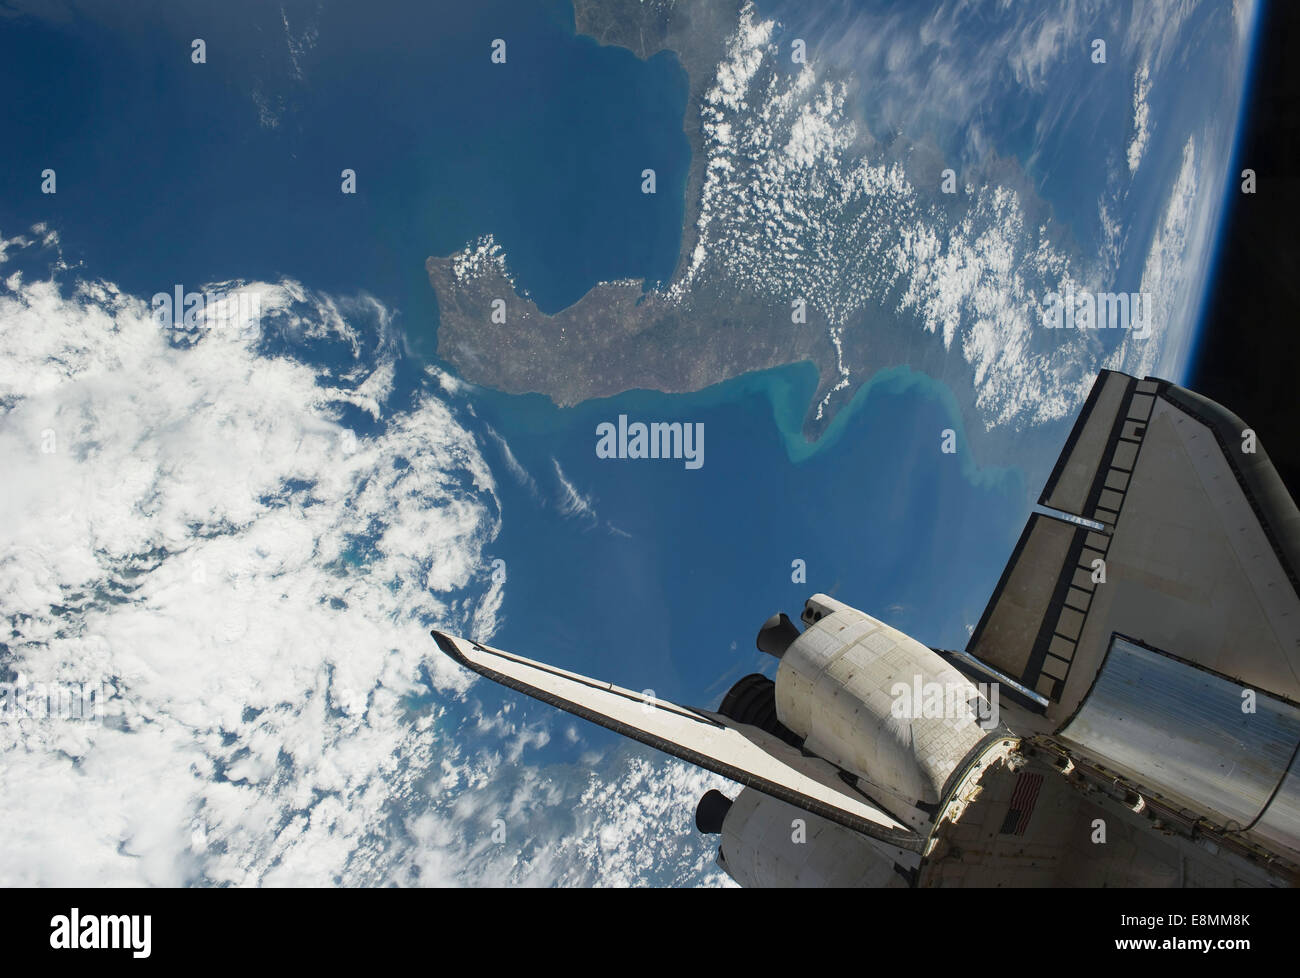 19 maggio 2011 - La parte poppiera della navetta spaziale Endeavour backdropped contro una parte della terra che mostra l'Italia. La stabilizzazione verticale Foto Stock